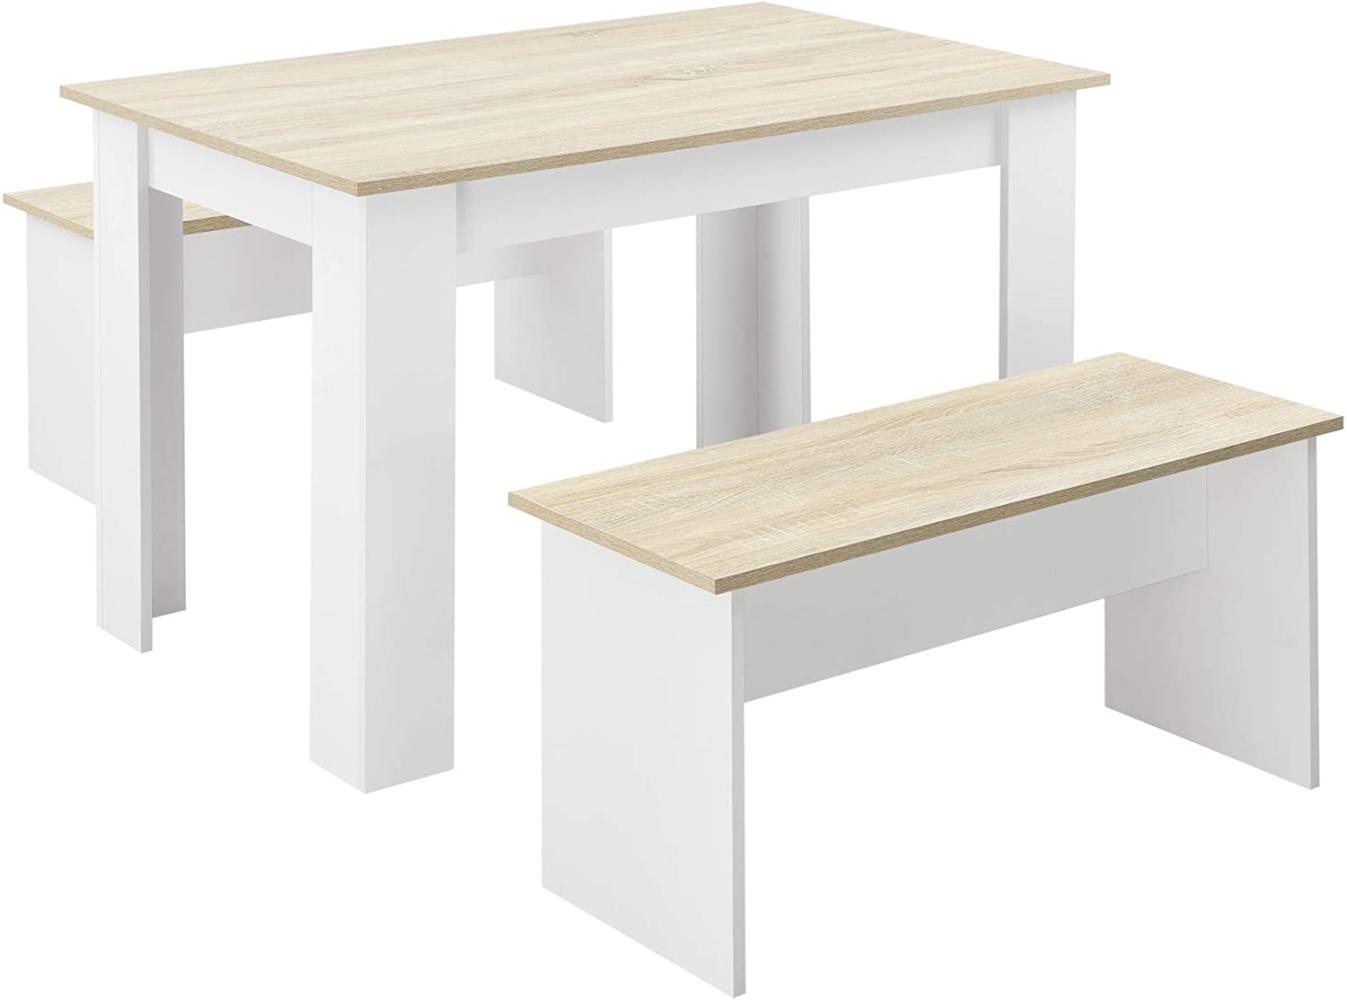 Tisch- und Bank Set Hokksund 110x70 cm mit 2 Bänken Weiß/Eiche en. casa Bild 1